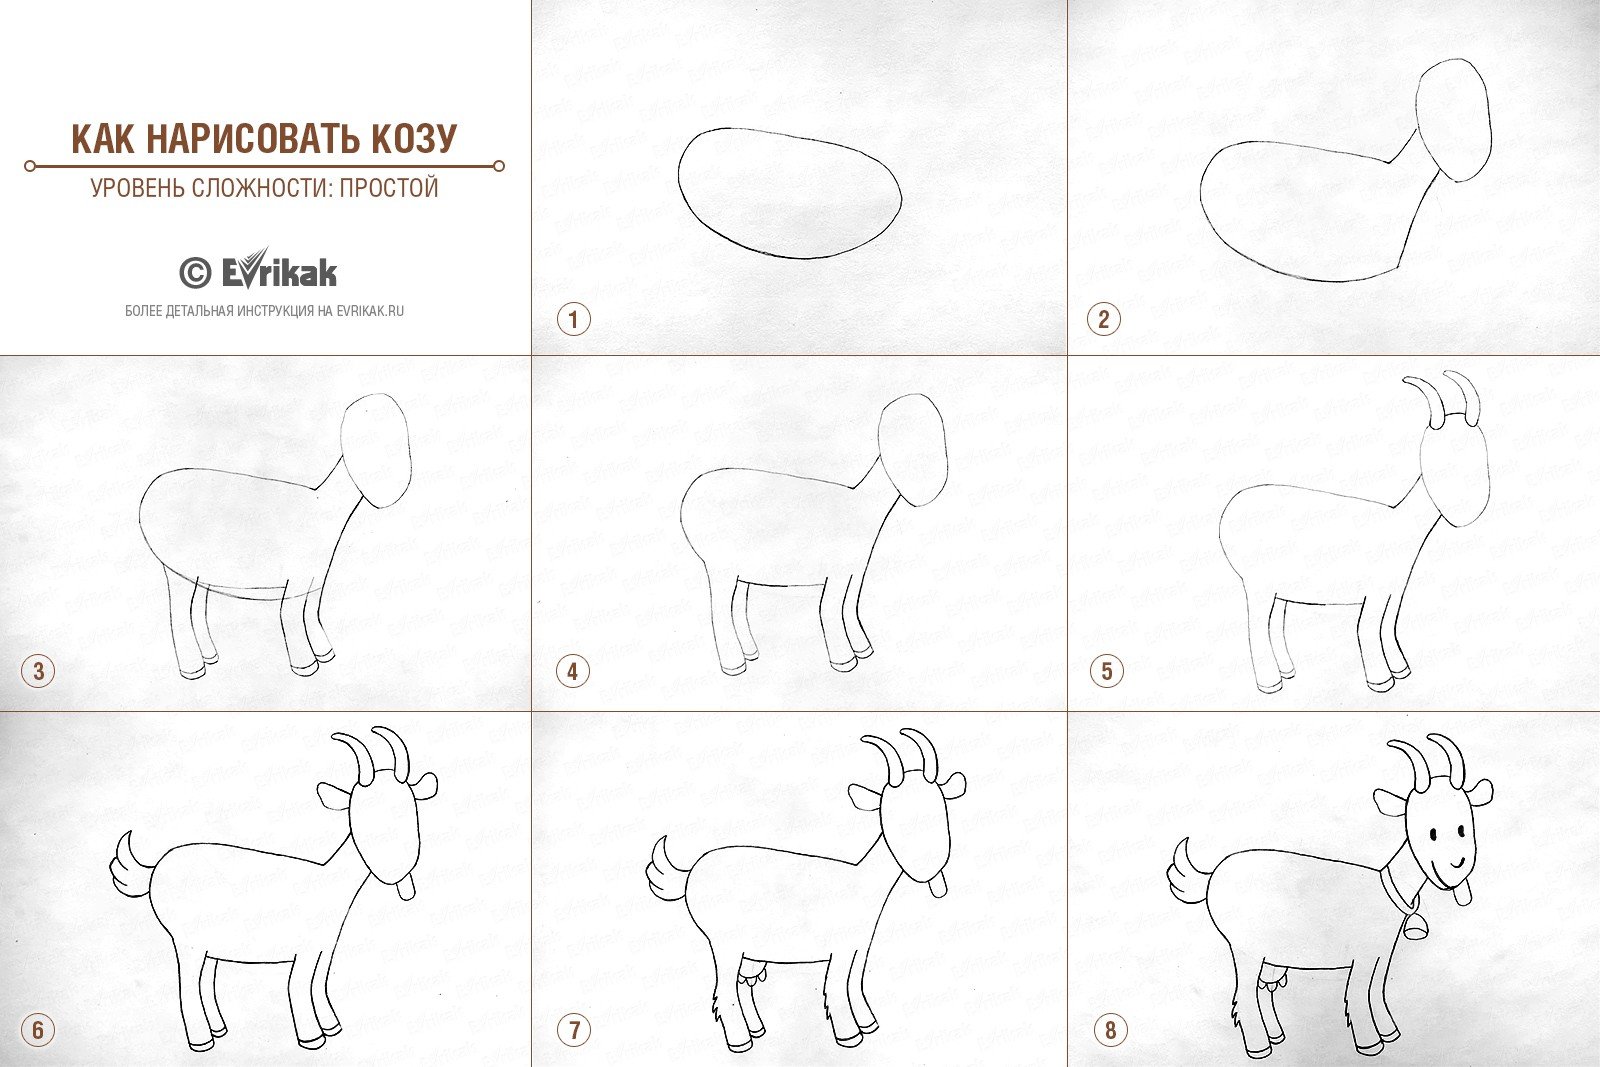 Рисование козлятки выбежали погулять на зеленый лужок. Козленок поэтапное рисование для детей. Поэтапное рисование козленка. Как нарисовать козу для детей поэтапно. Пошаговое рисование козленка для детей.